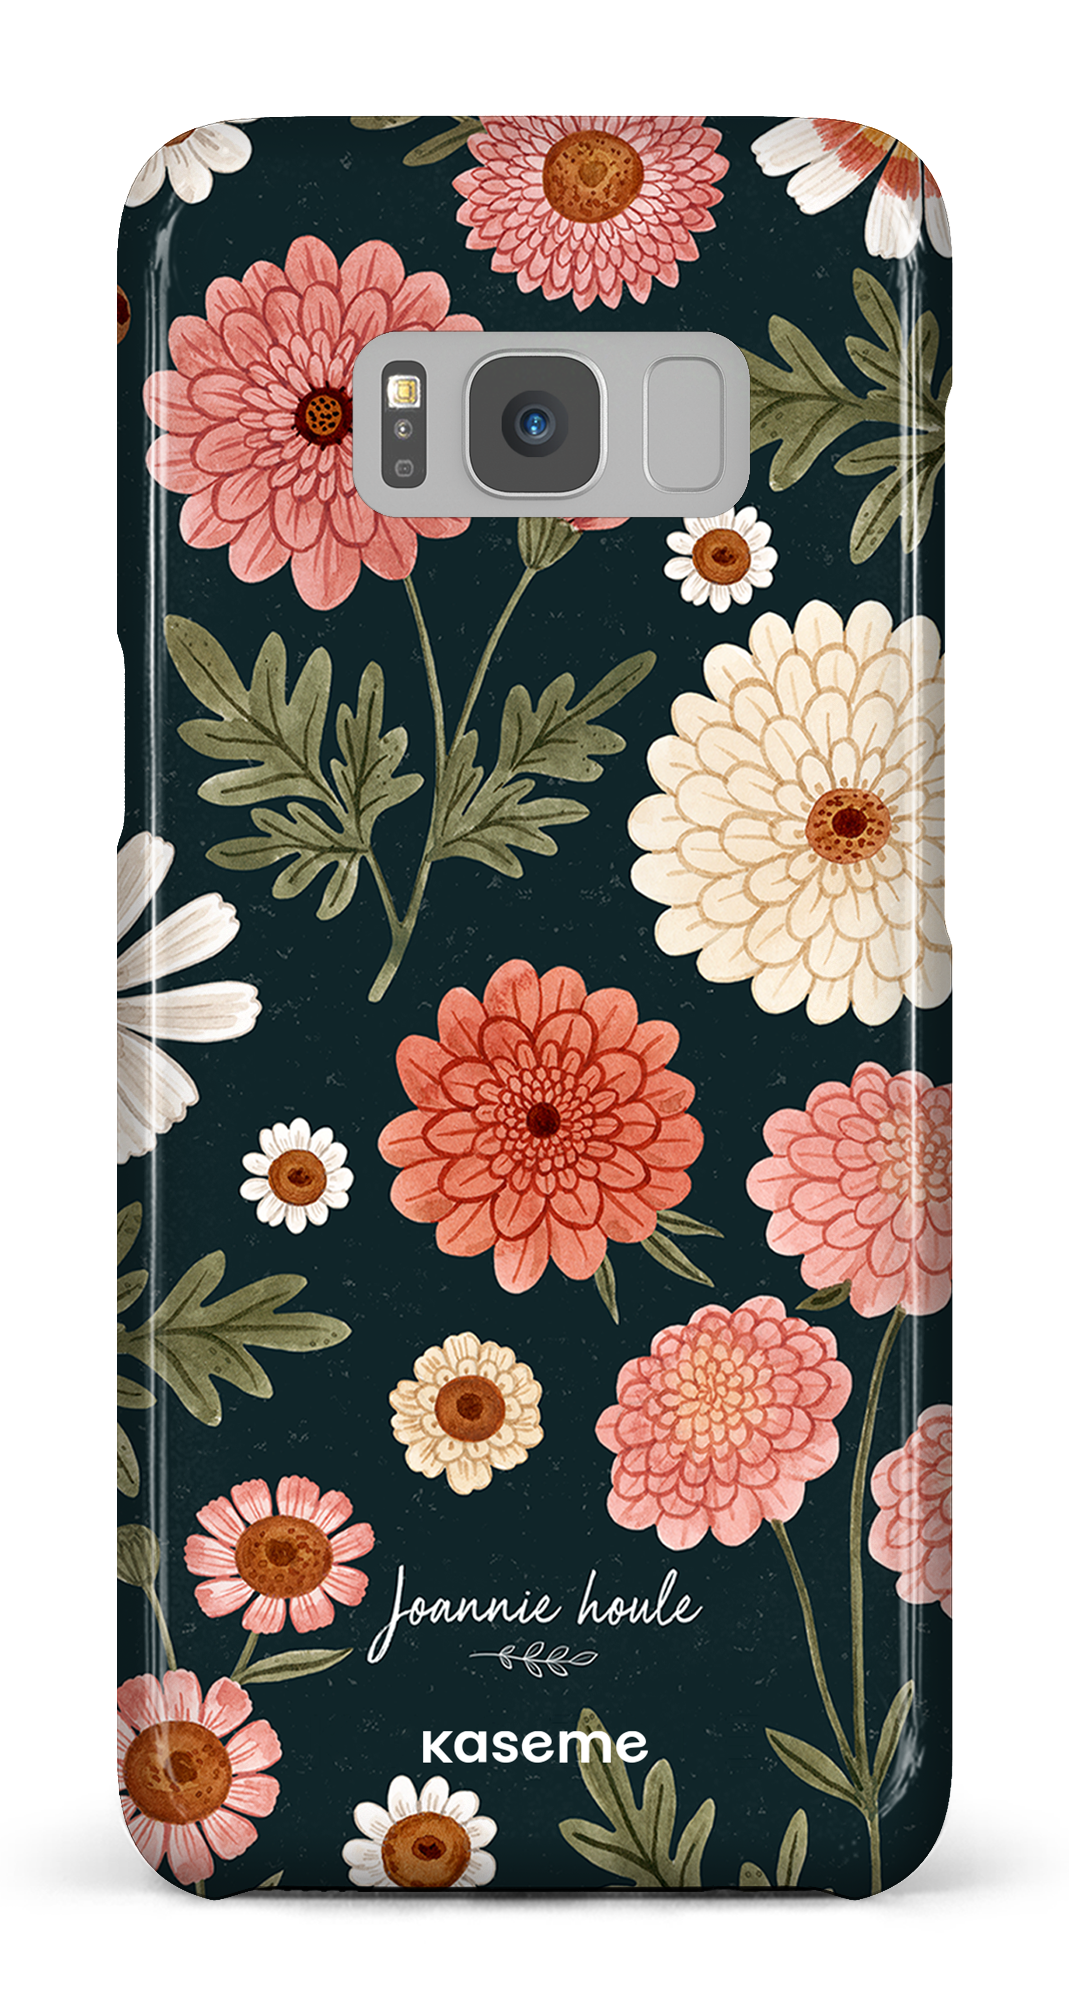 Chrysanthemums by Joannie Houle - Galaxy S8